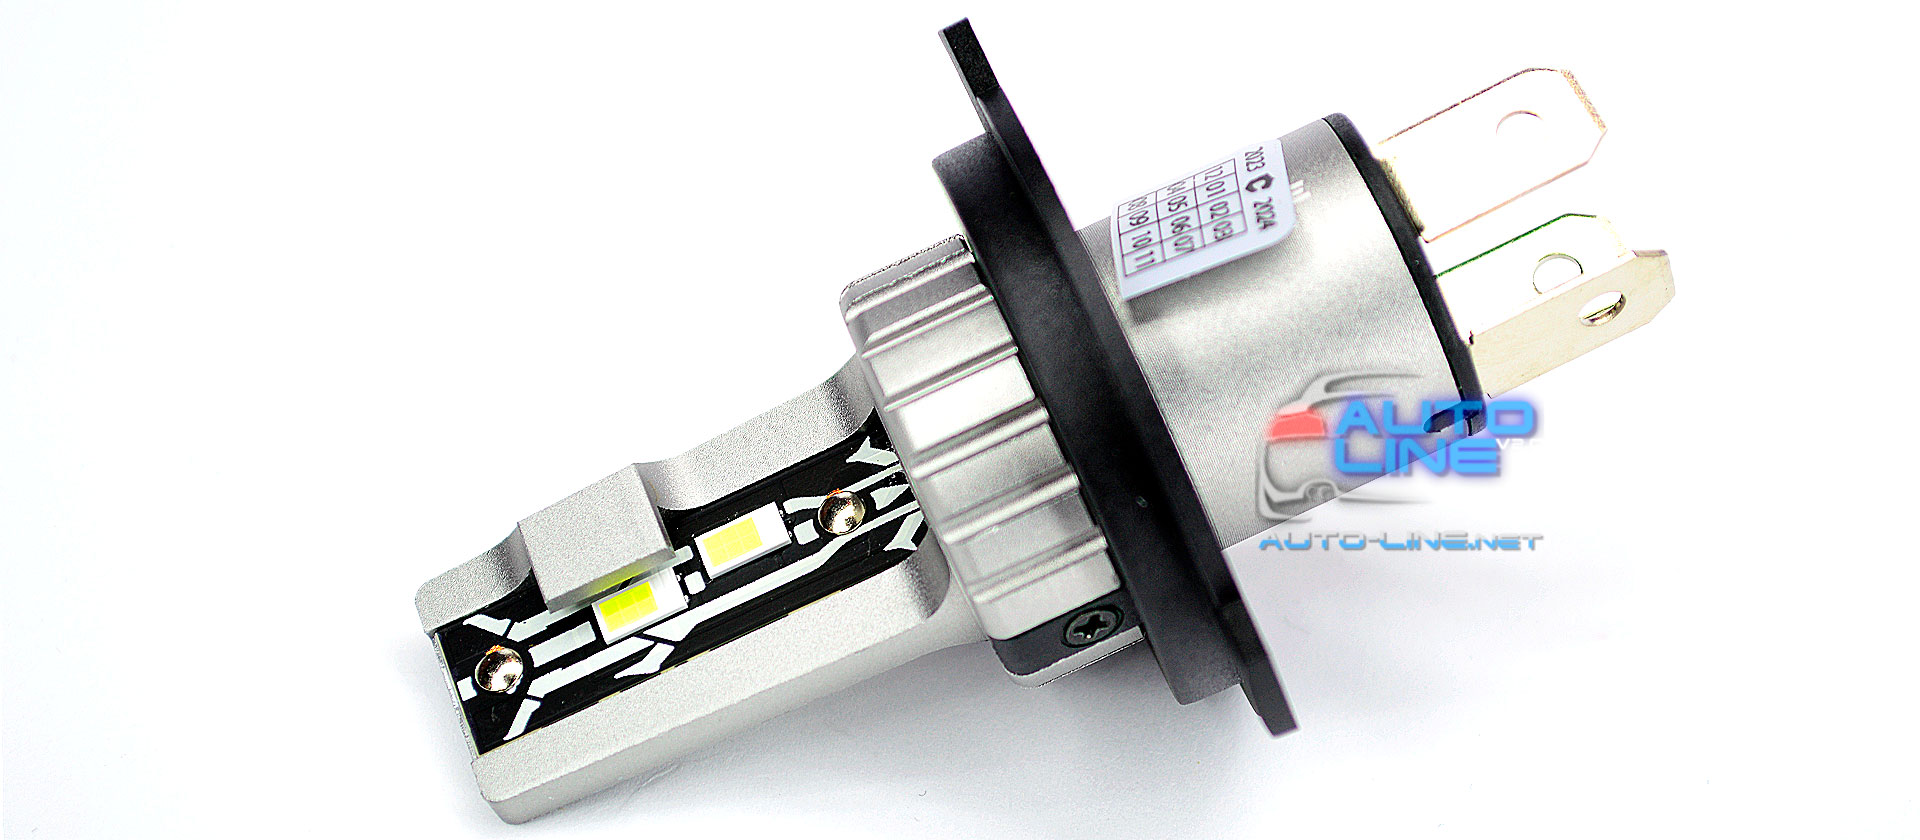 Cyclone LED H4 H/L 6000K type 32 v2 — автомобильная LED-лампа H4 с пассивным охлаждением